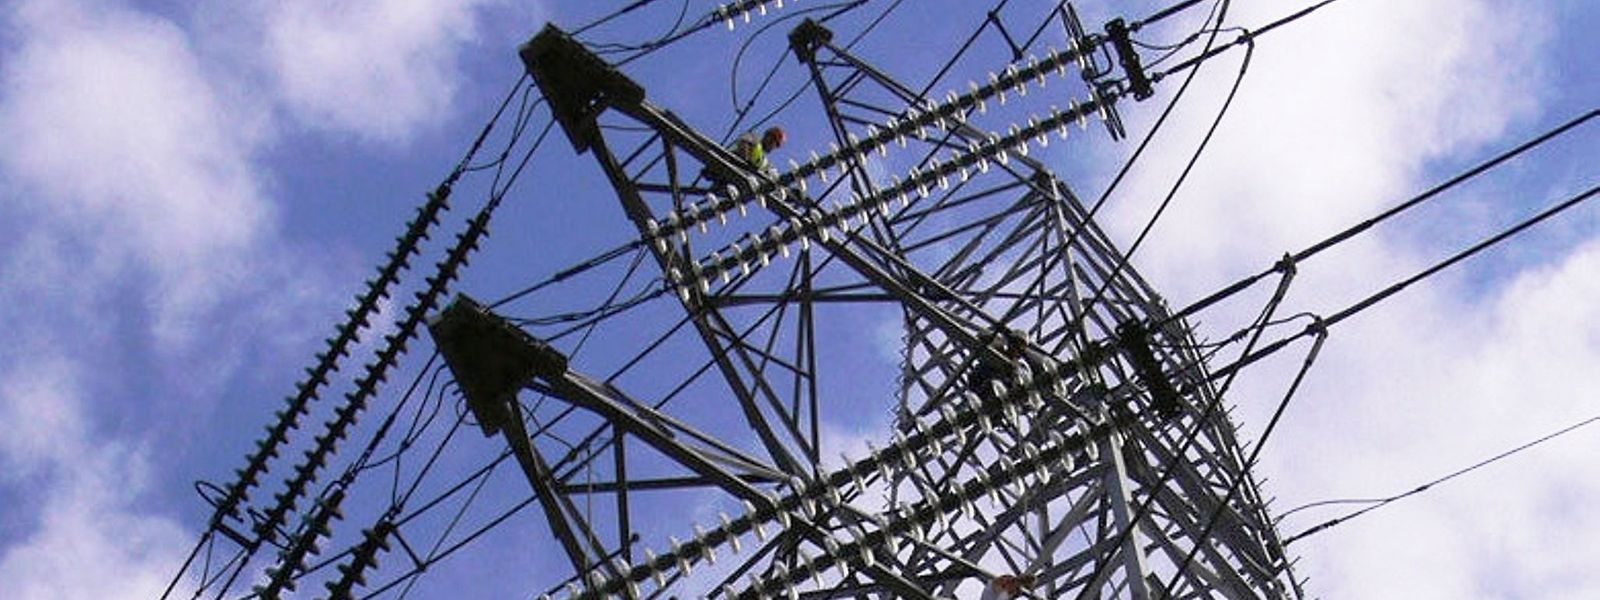 Le gouvernement fédéral belge a décidé d'abaisser la TVA sur l'électricité de manière temporaire à 6%, du 1er mars au 1er juillet.